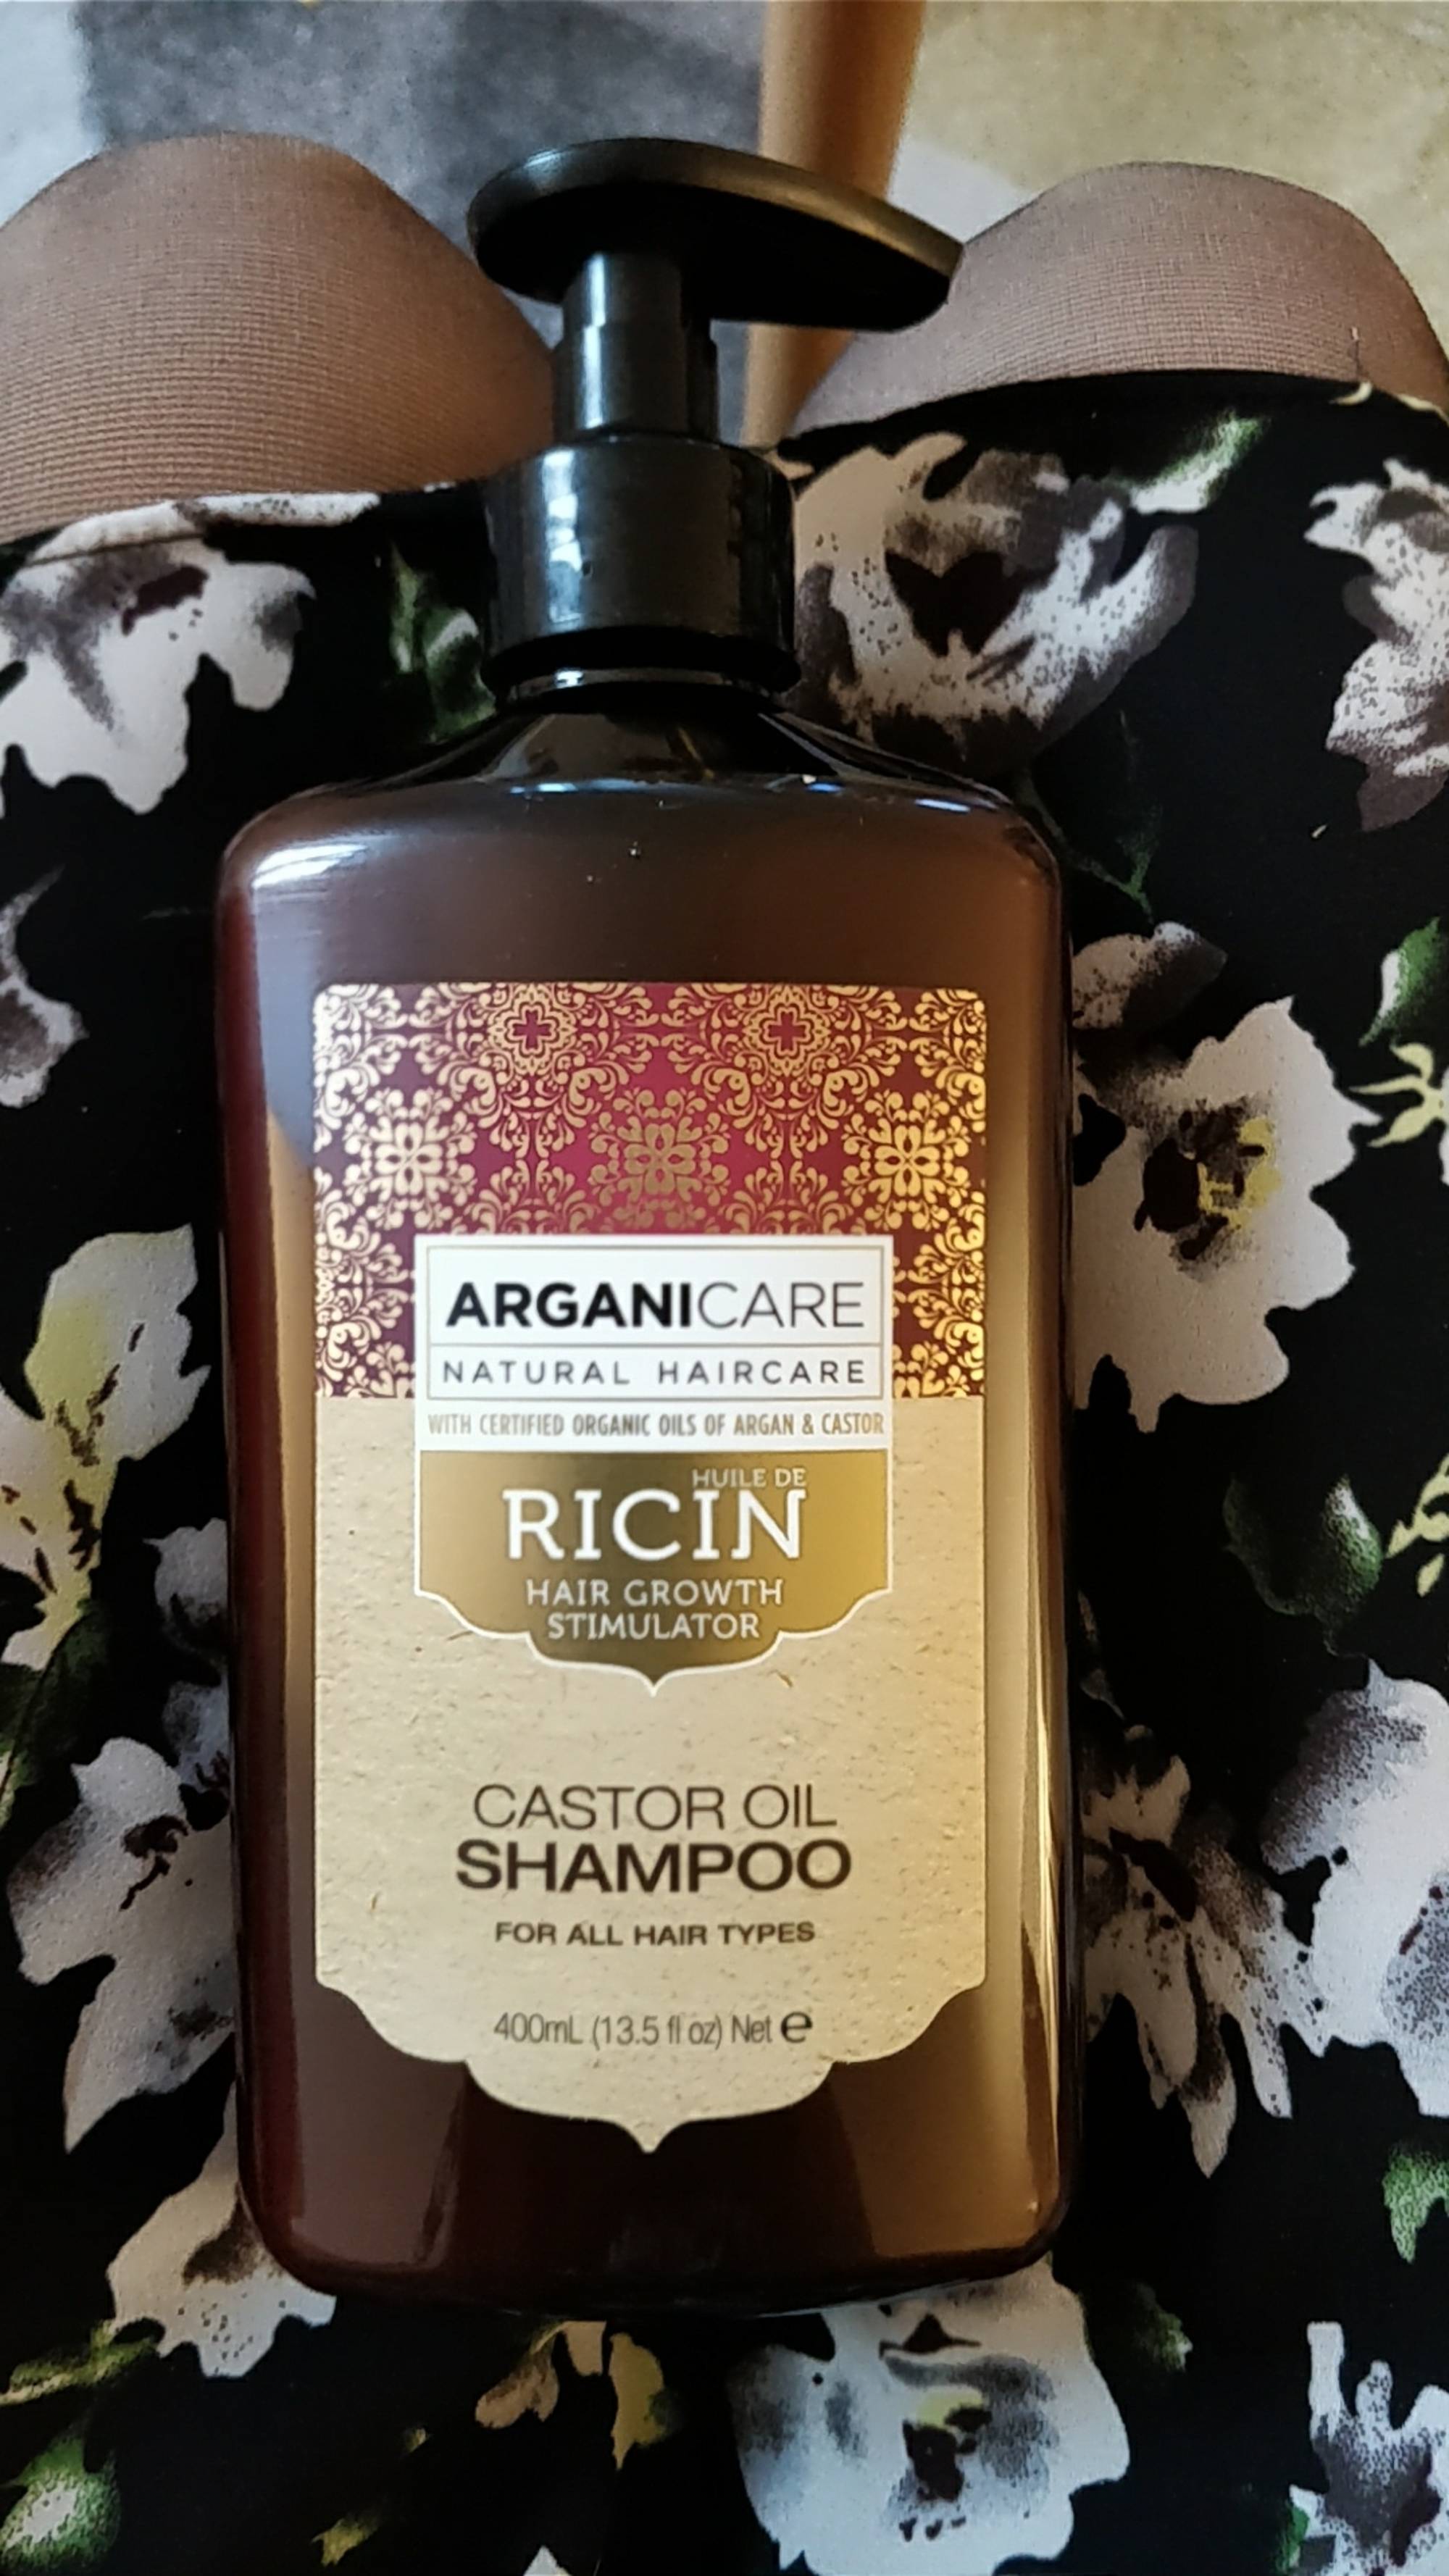 ARGANICARE - Ricin bio - Castor oil shampoo